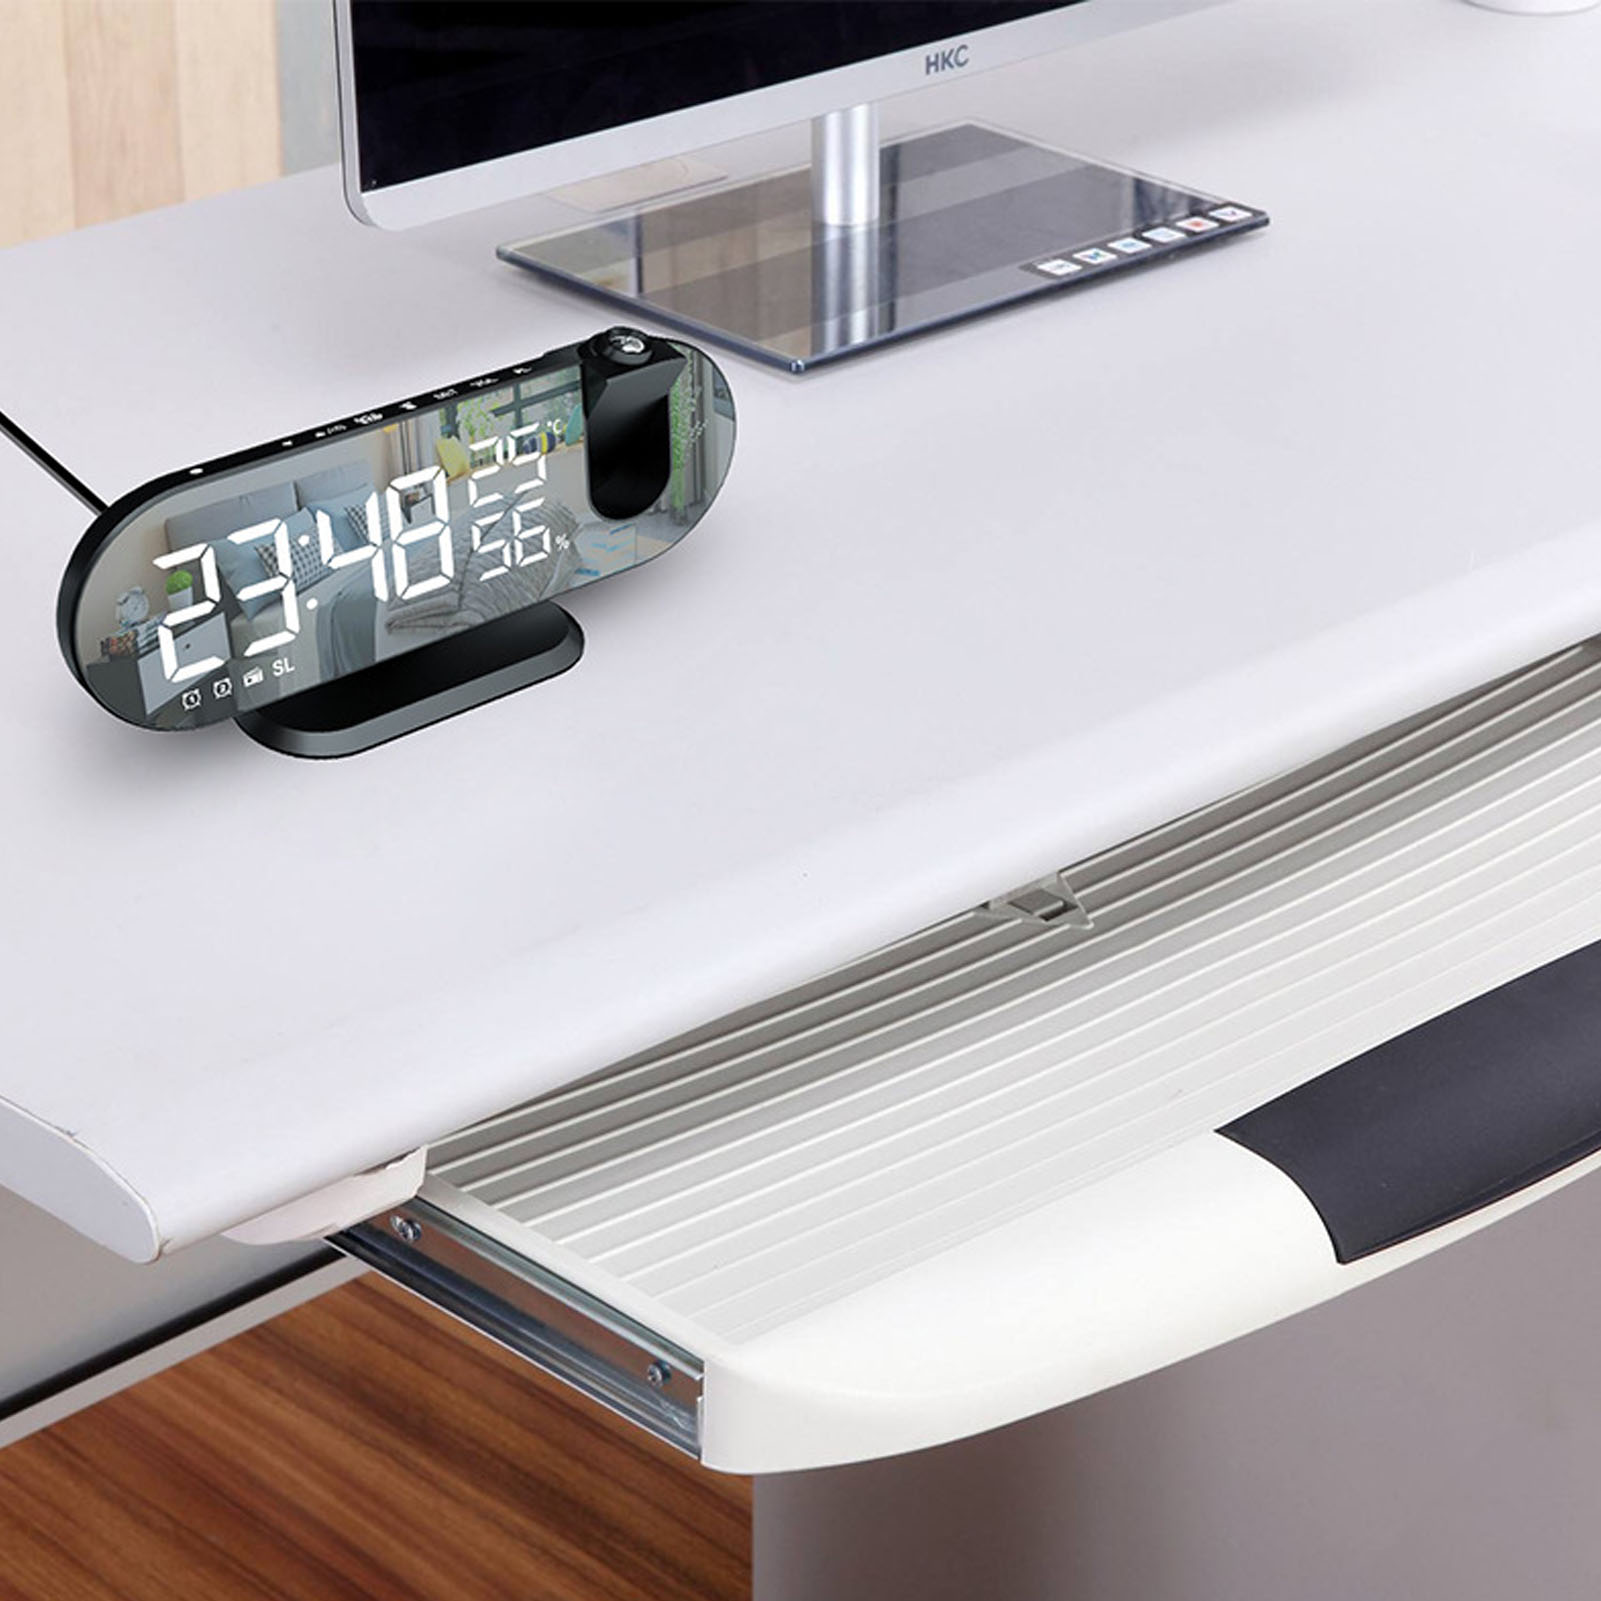 Chiếu đồng hồ kỹ thuật số màn hình lớn độ sáng cao Led 5V màn hình gương thiết kế dùng nguồn USB chiếu đồng hồ Radio báo thức cho đồng hồ báo thức cho tường